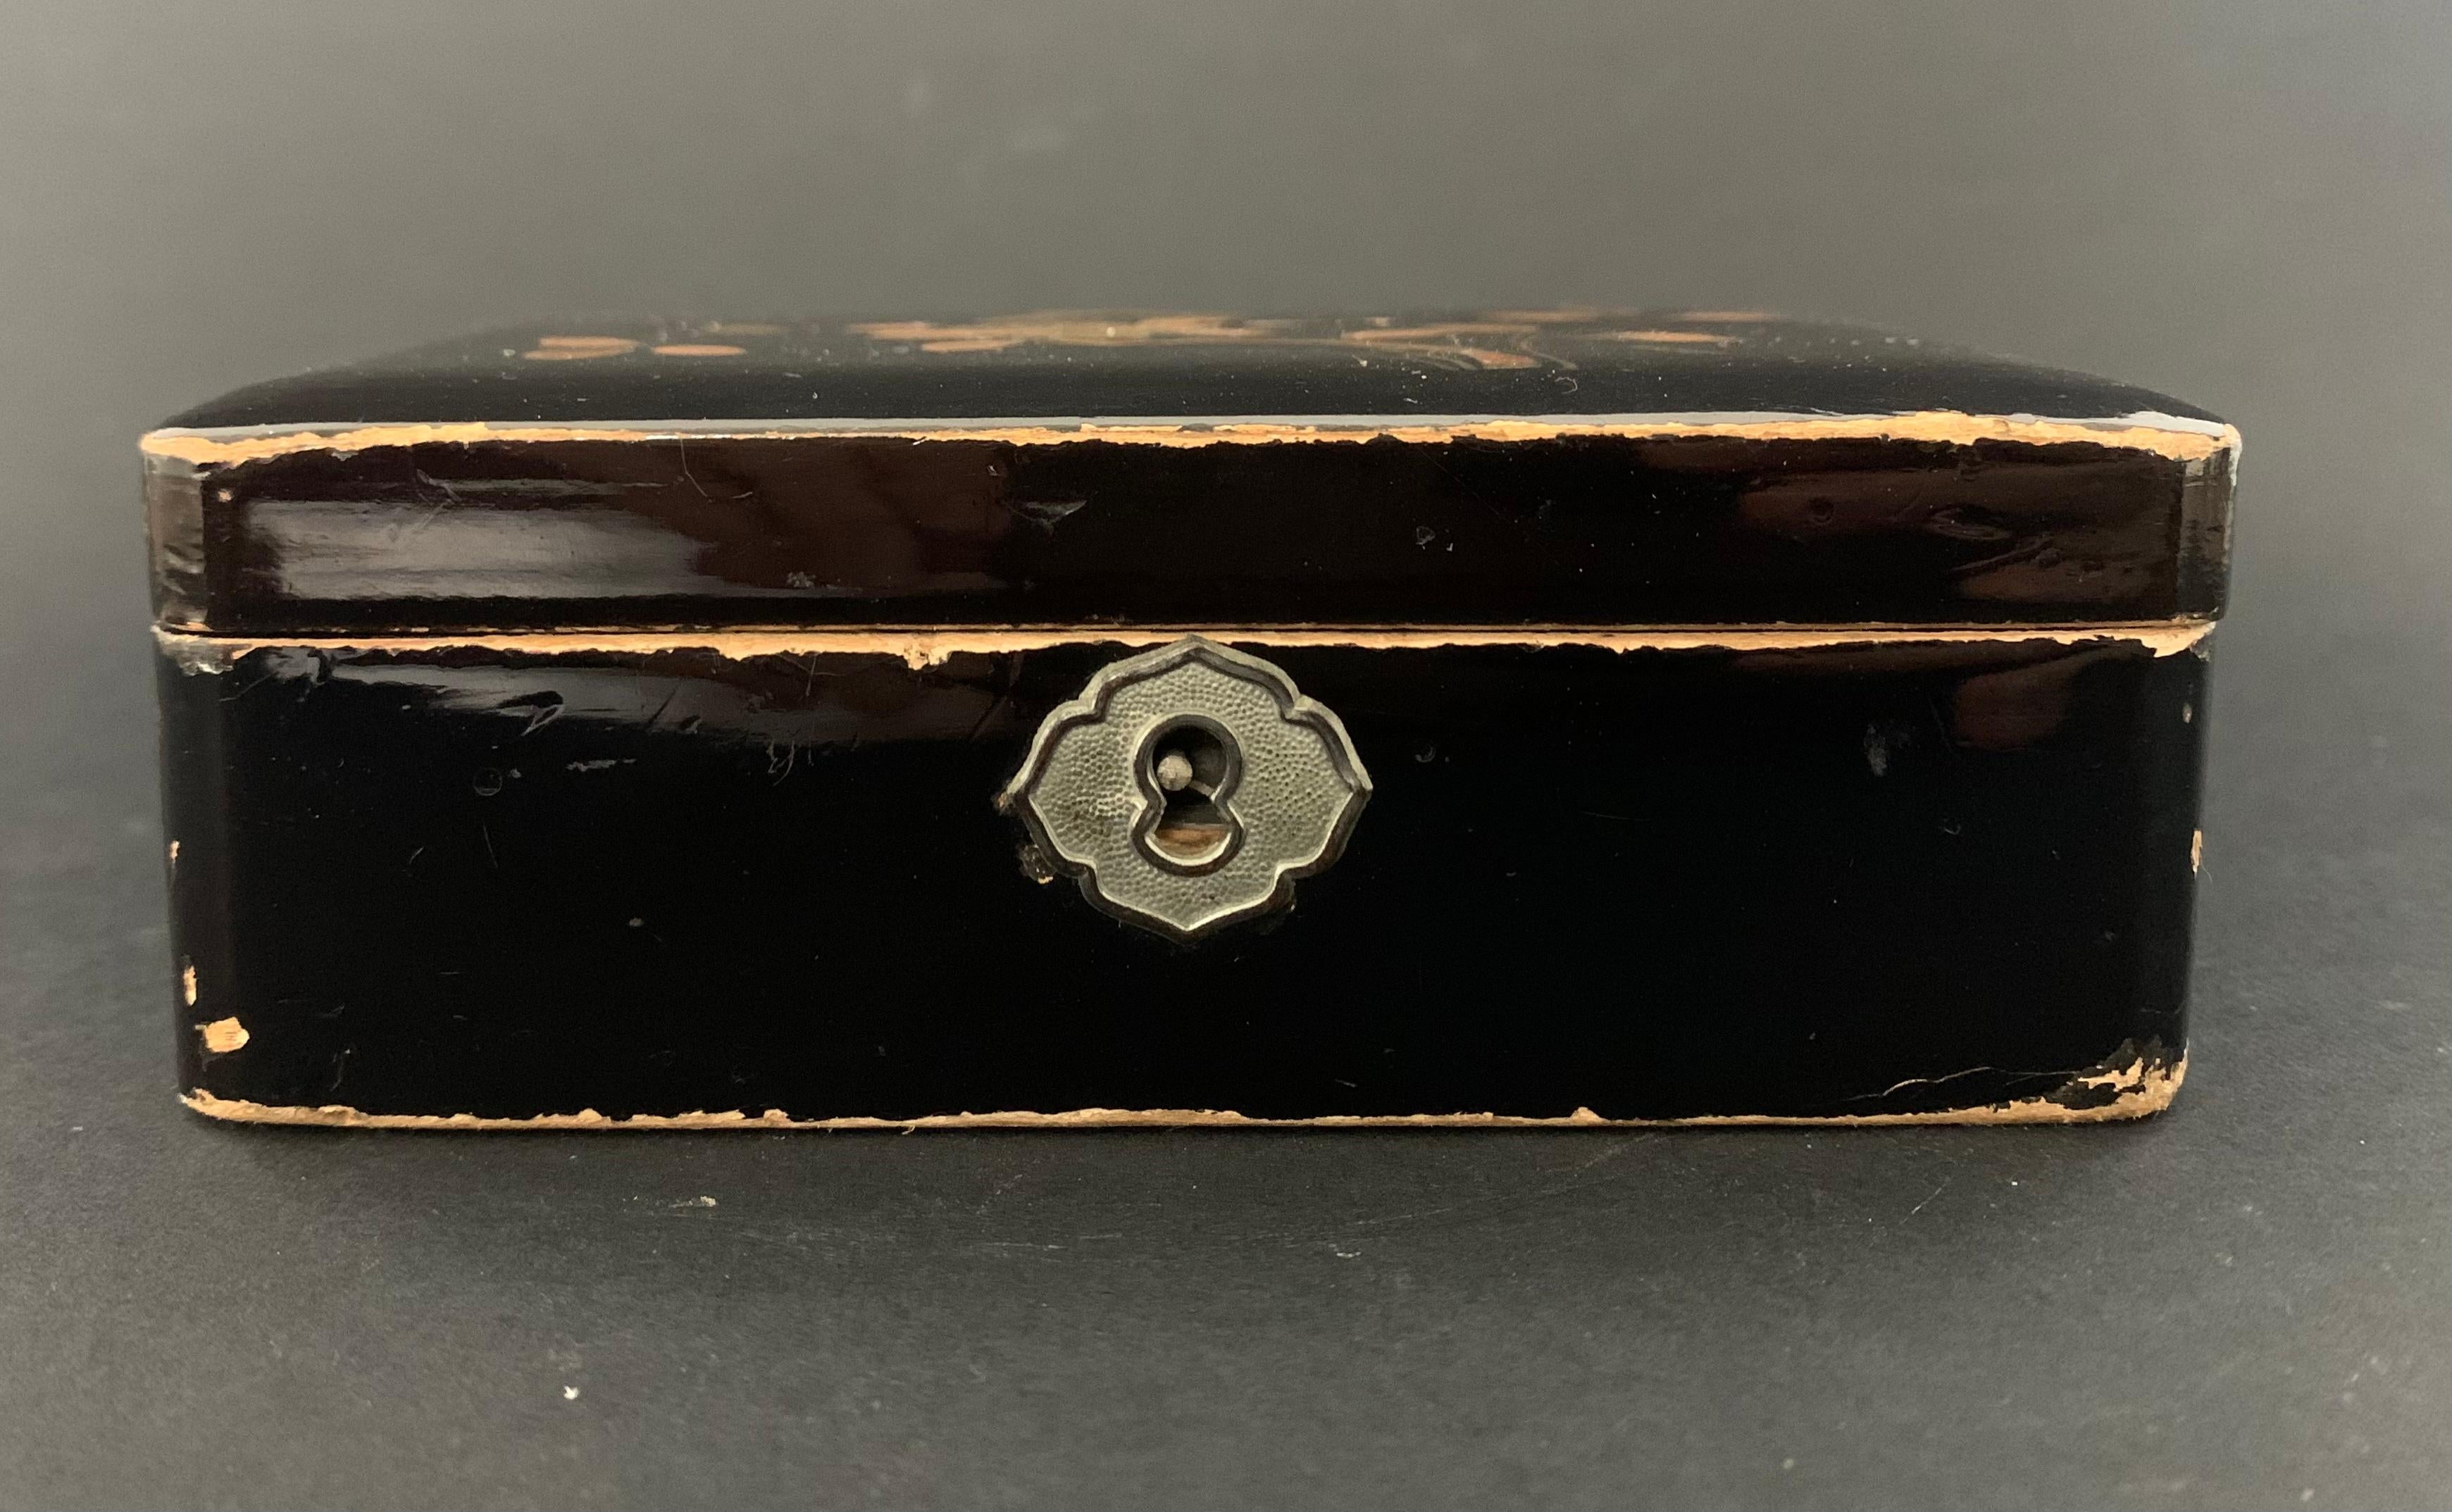 Jolie petite boîte en laque noire du Japon. Il est fabriqué en bois laqué noir et décoré de fleurs et de feuillages. L'intérieur est recouvert de velours rouge. Il est idéal pour ranger les bijoux. 
Japon 
Date d'environ 1890.
   